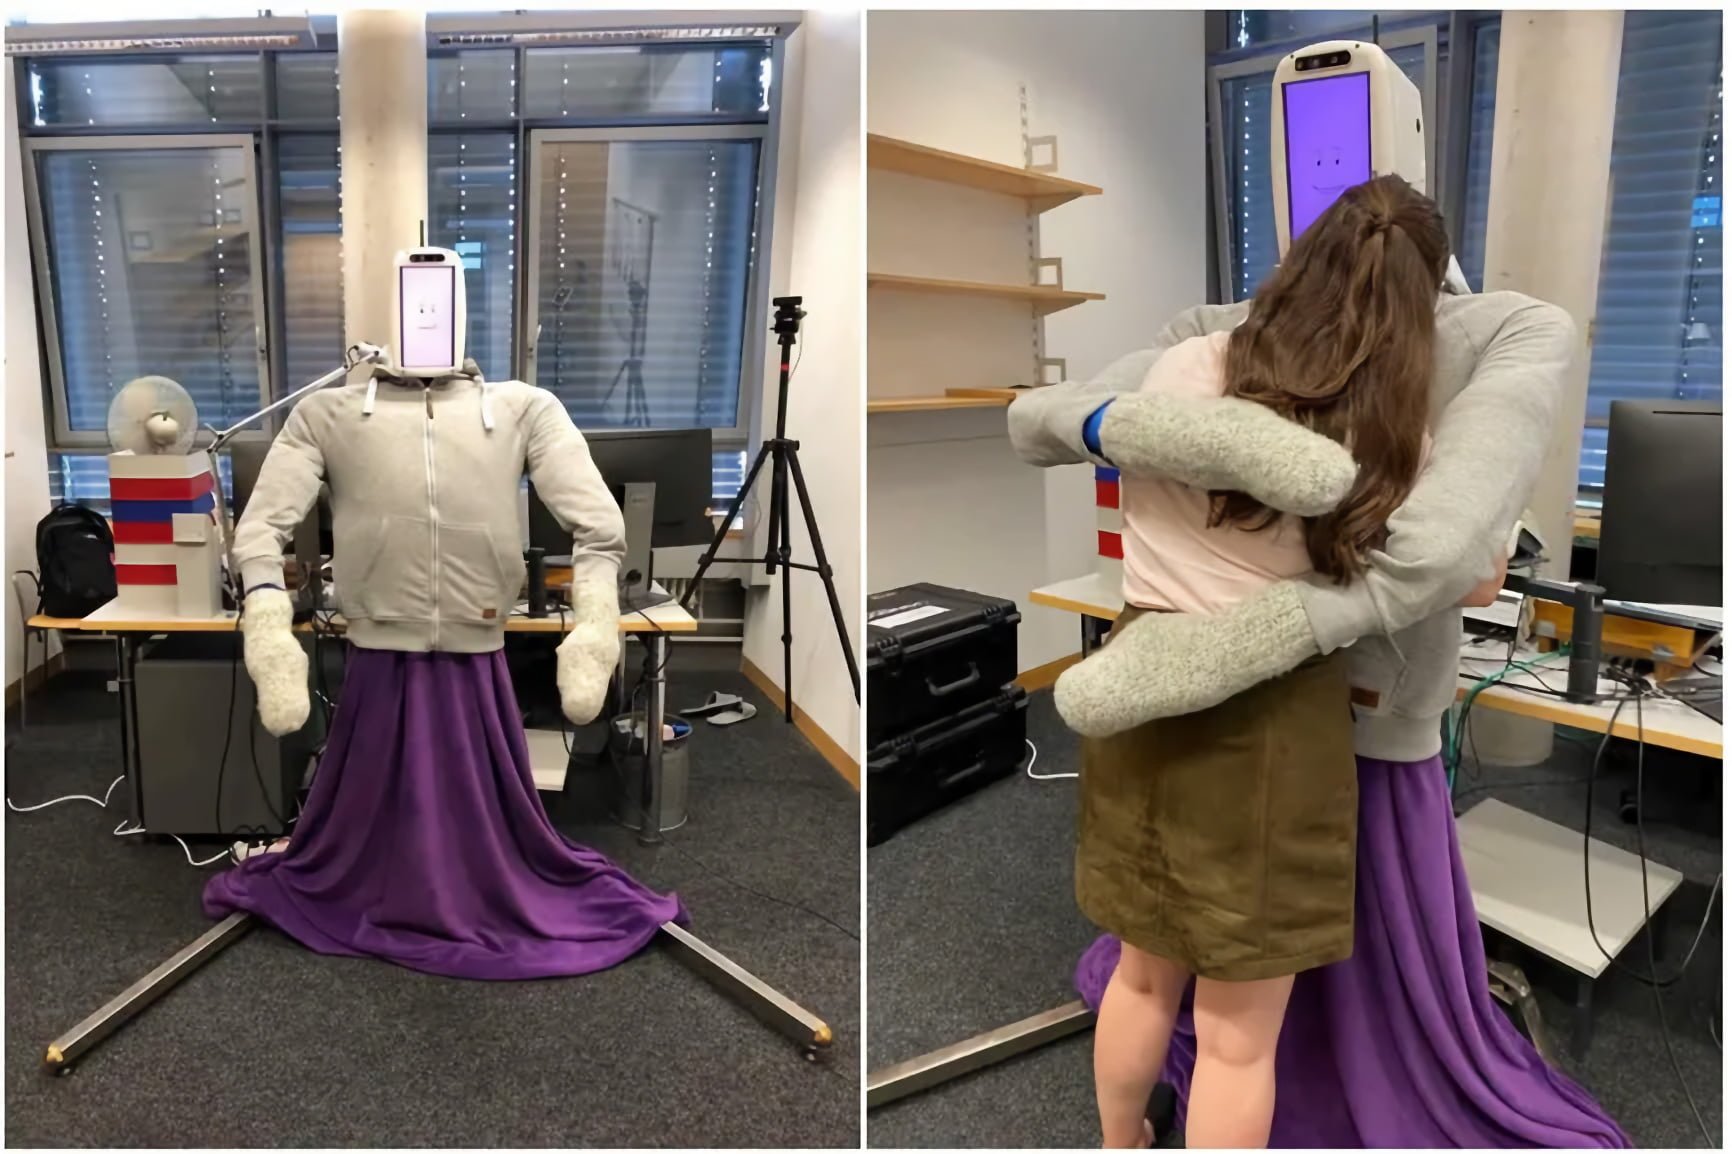 HuggieBot 3.0: Robot to learn the perfect hug